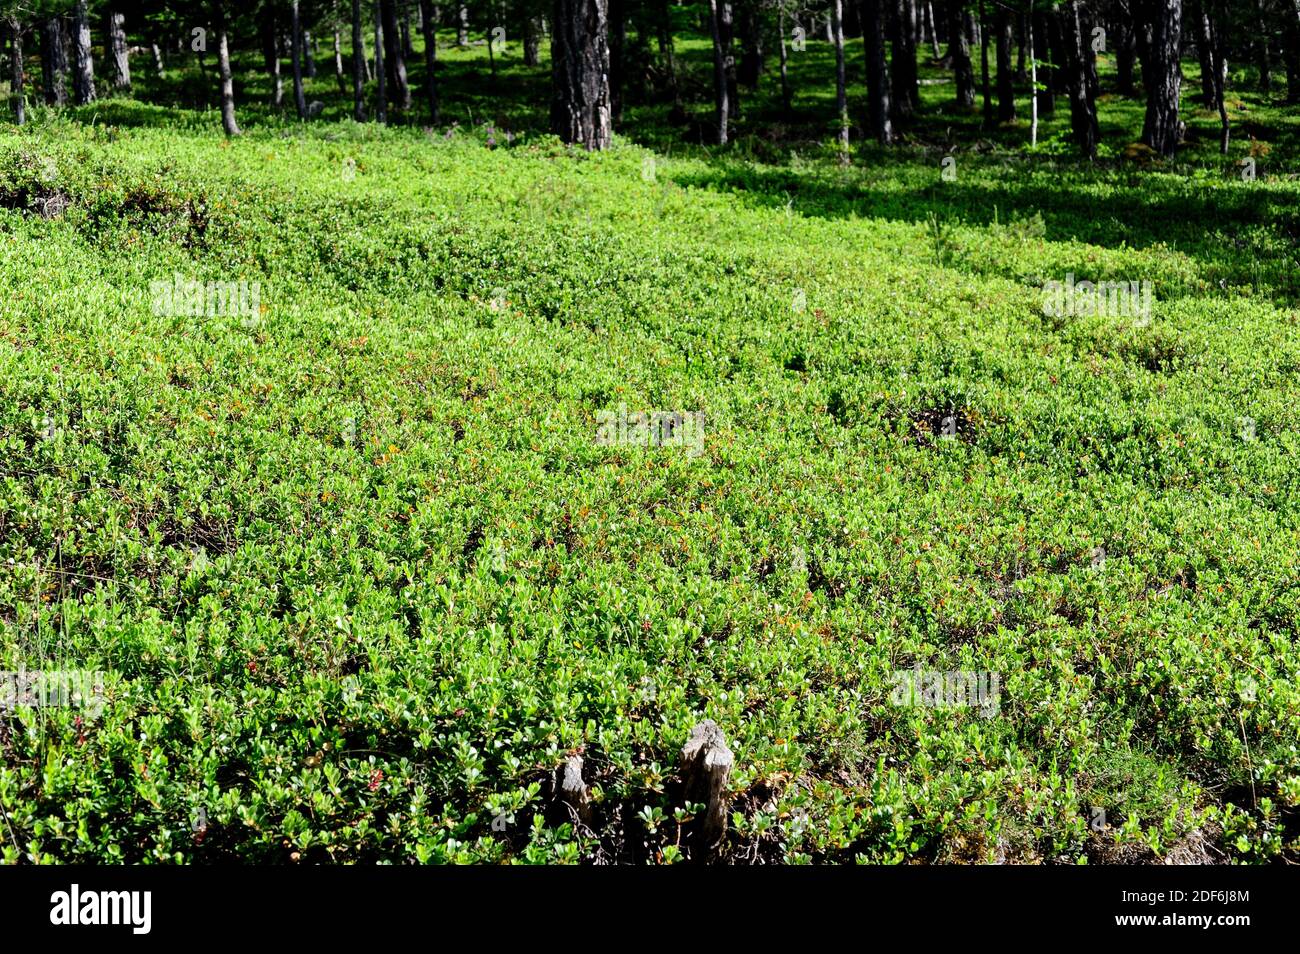 Arándano (Arctostaphylos uva-ursi) es un arbusto procumbente medicinal nativo de las latitudes y montañas del norte de Europa, América del Norte y Asia. Foto de stock